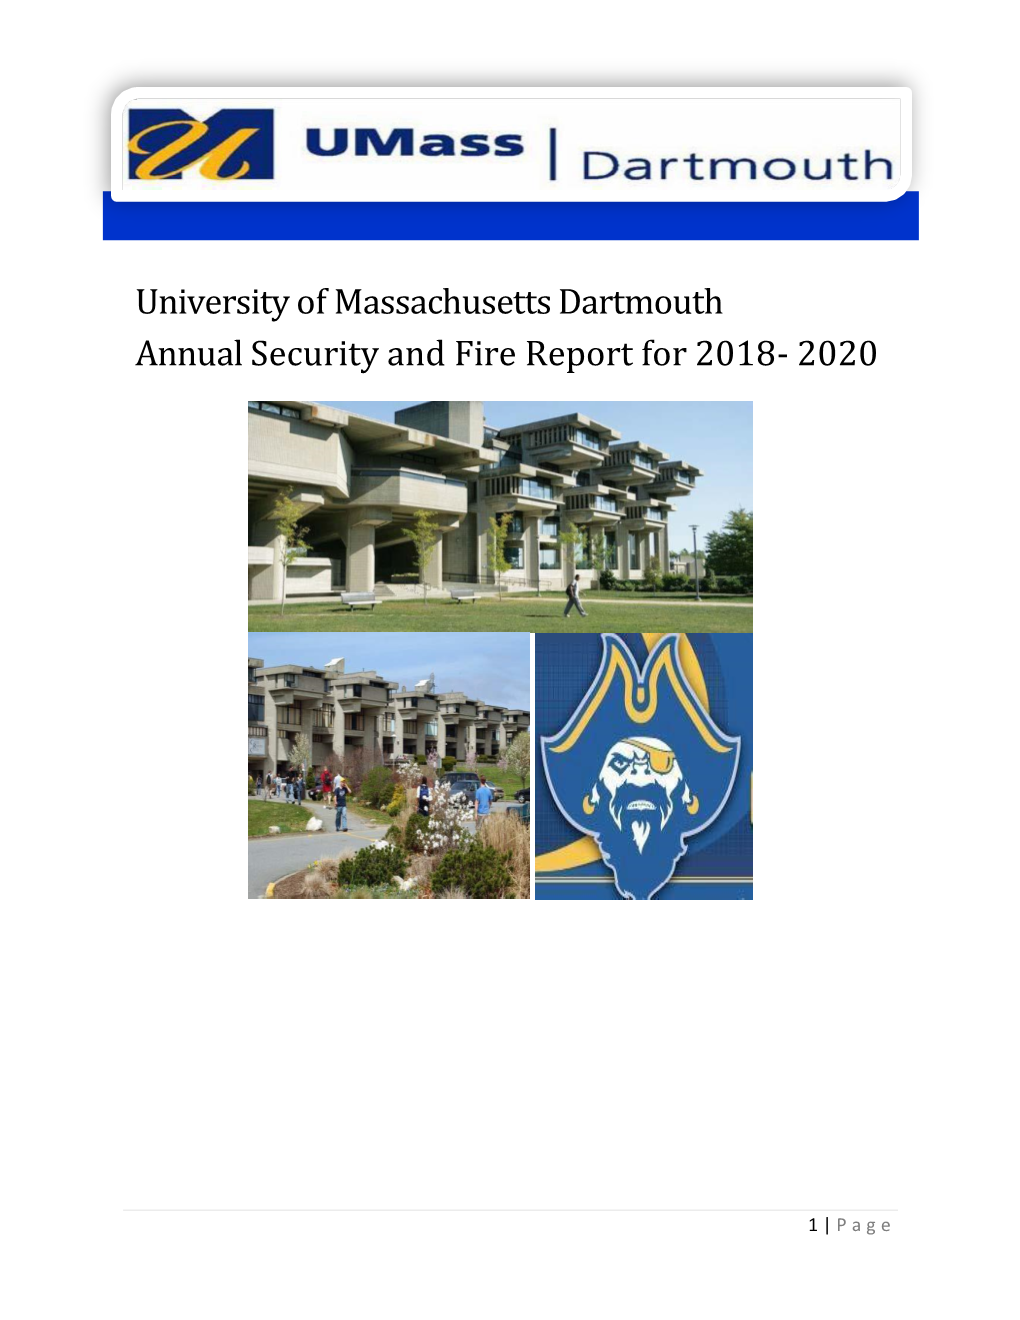 Umass Dartmouth Annual Security Report